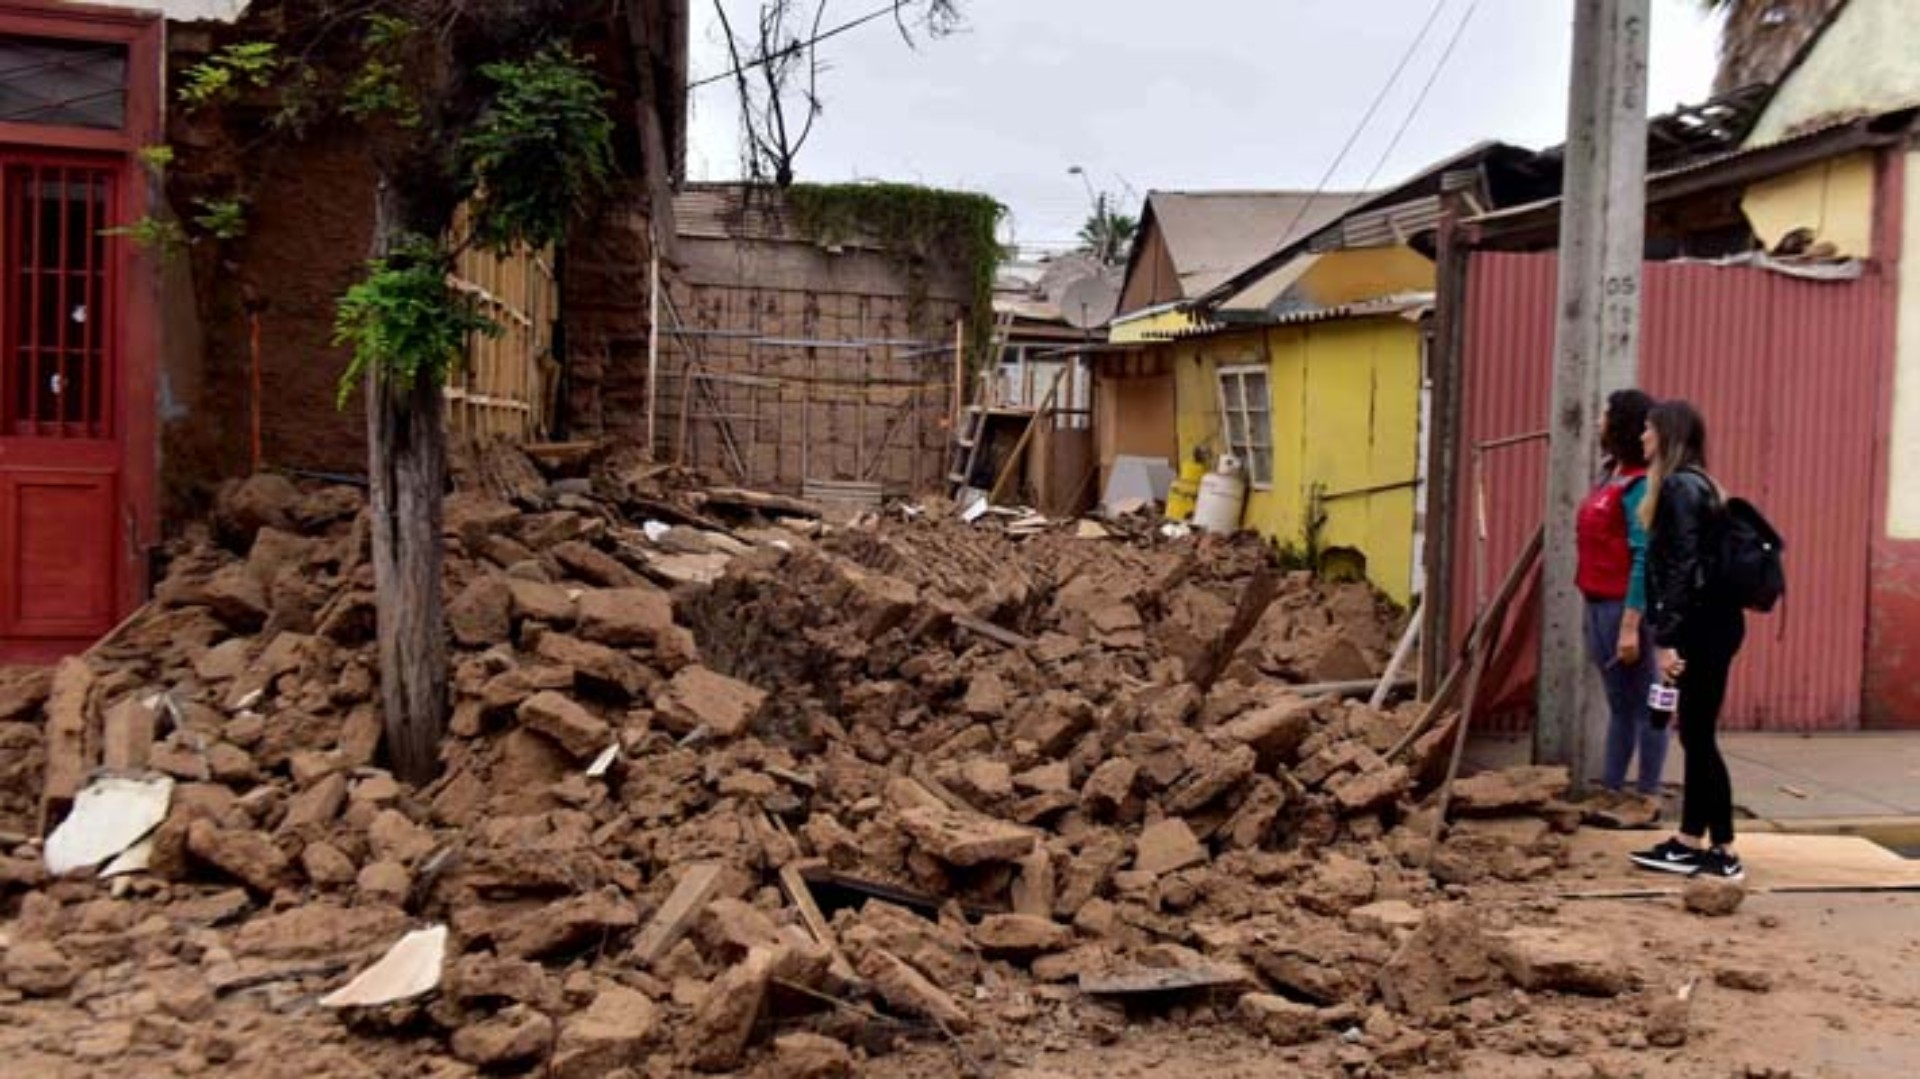 Video Duras imágenes del sismo en Chile en el que murieron 2 personas Canal 9 Televida Mendoza